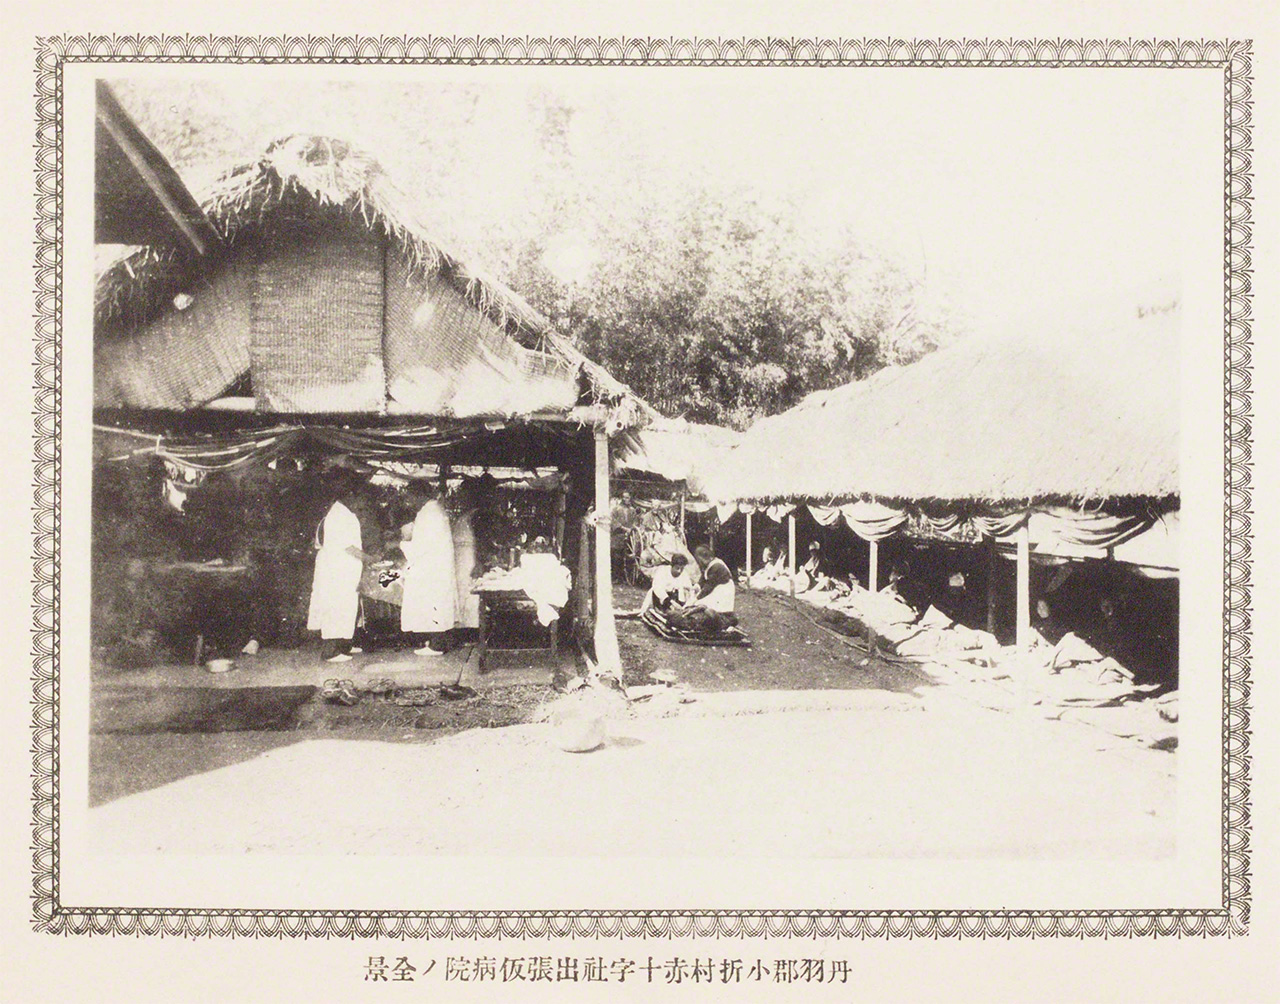 Fotografía de las labores de asistencia de la Cruz Roja de Japón tras el terremoto de Nōbi, ocurrido en 1891.